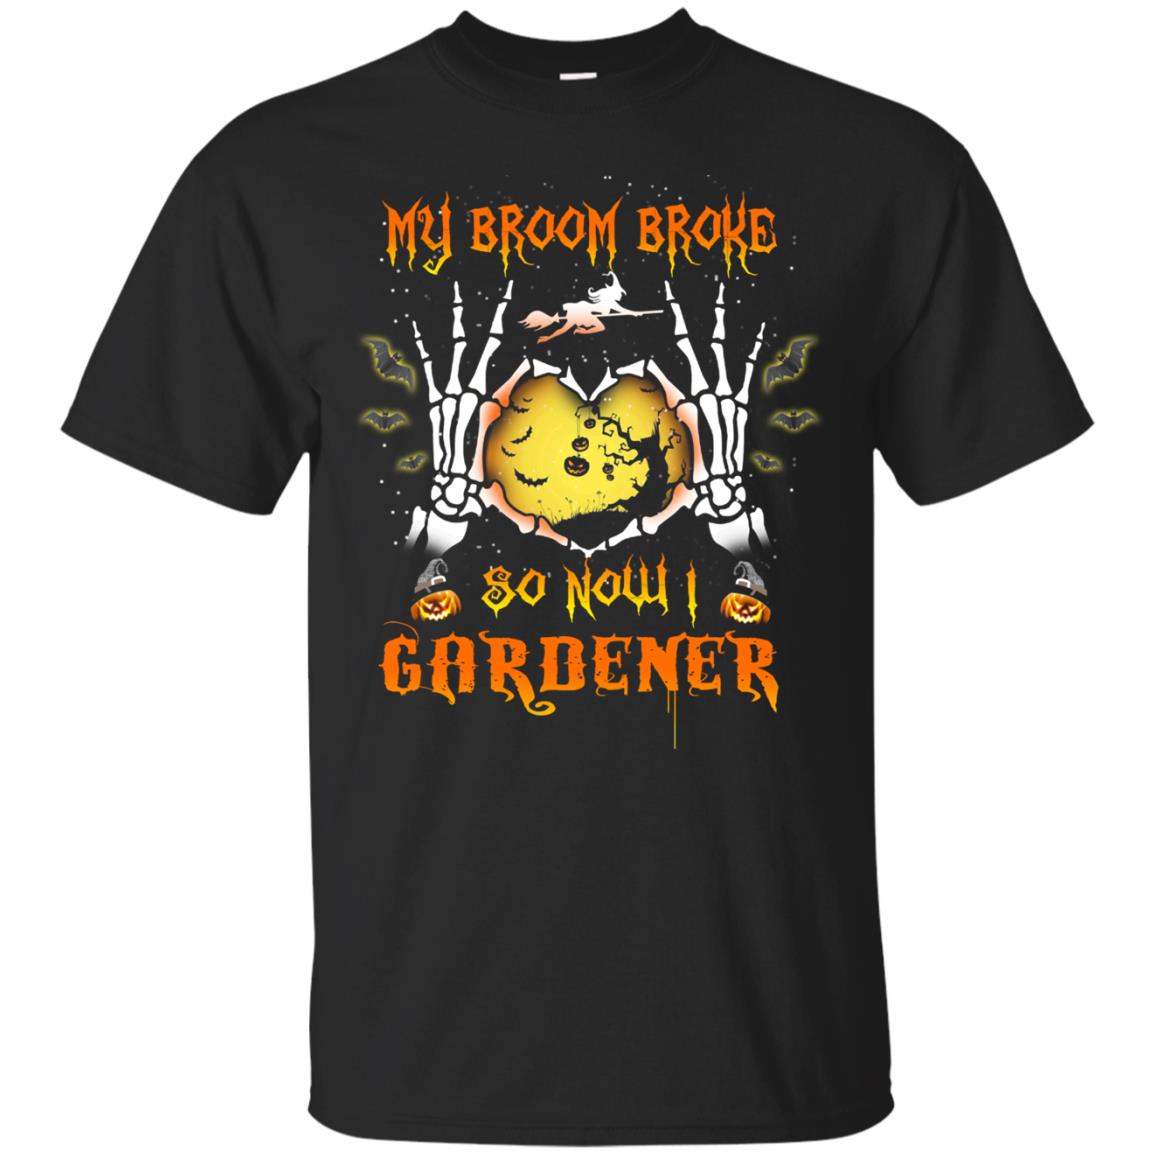 My broom broke so now I Gardener shirt, hoodie, tank